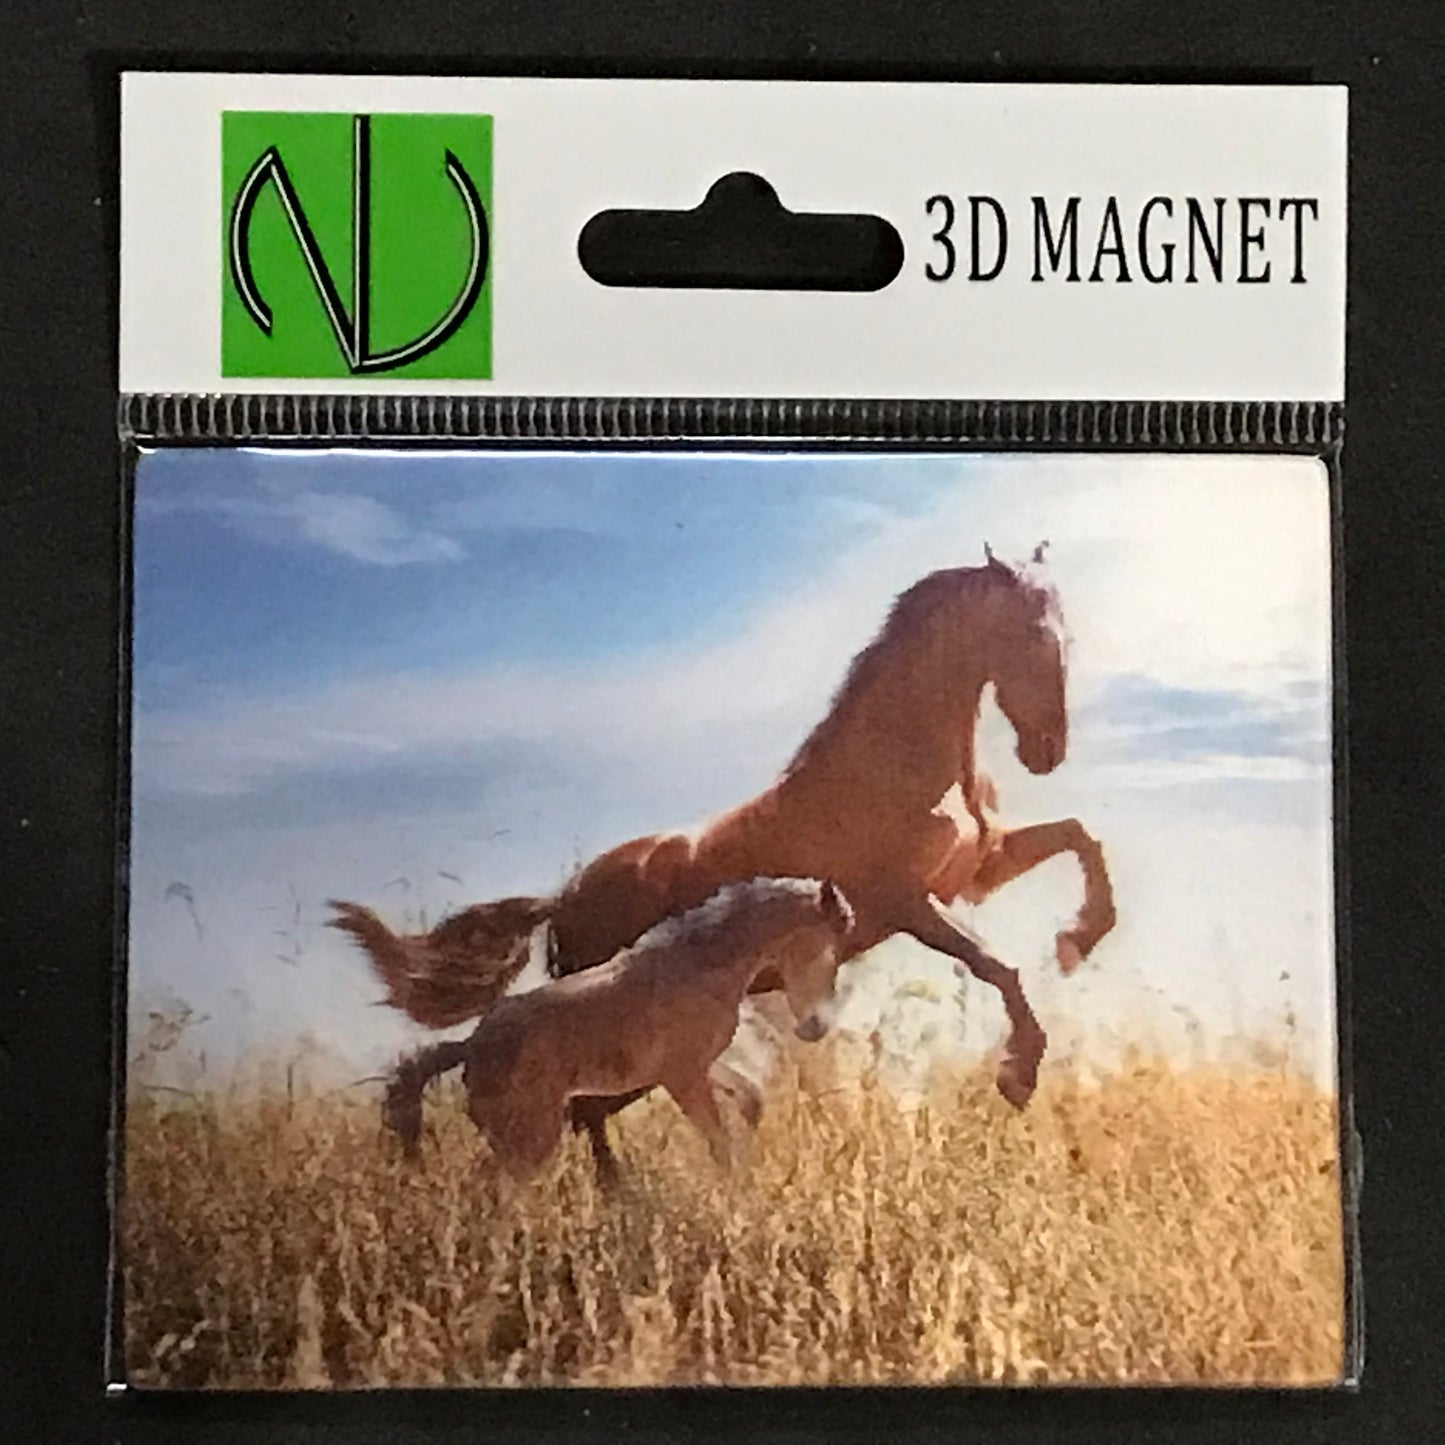 HORSES WILD MARE & COLT 3D LENTICULAR MAGNET 2.75" X 3.5"